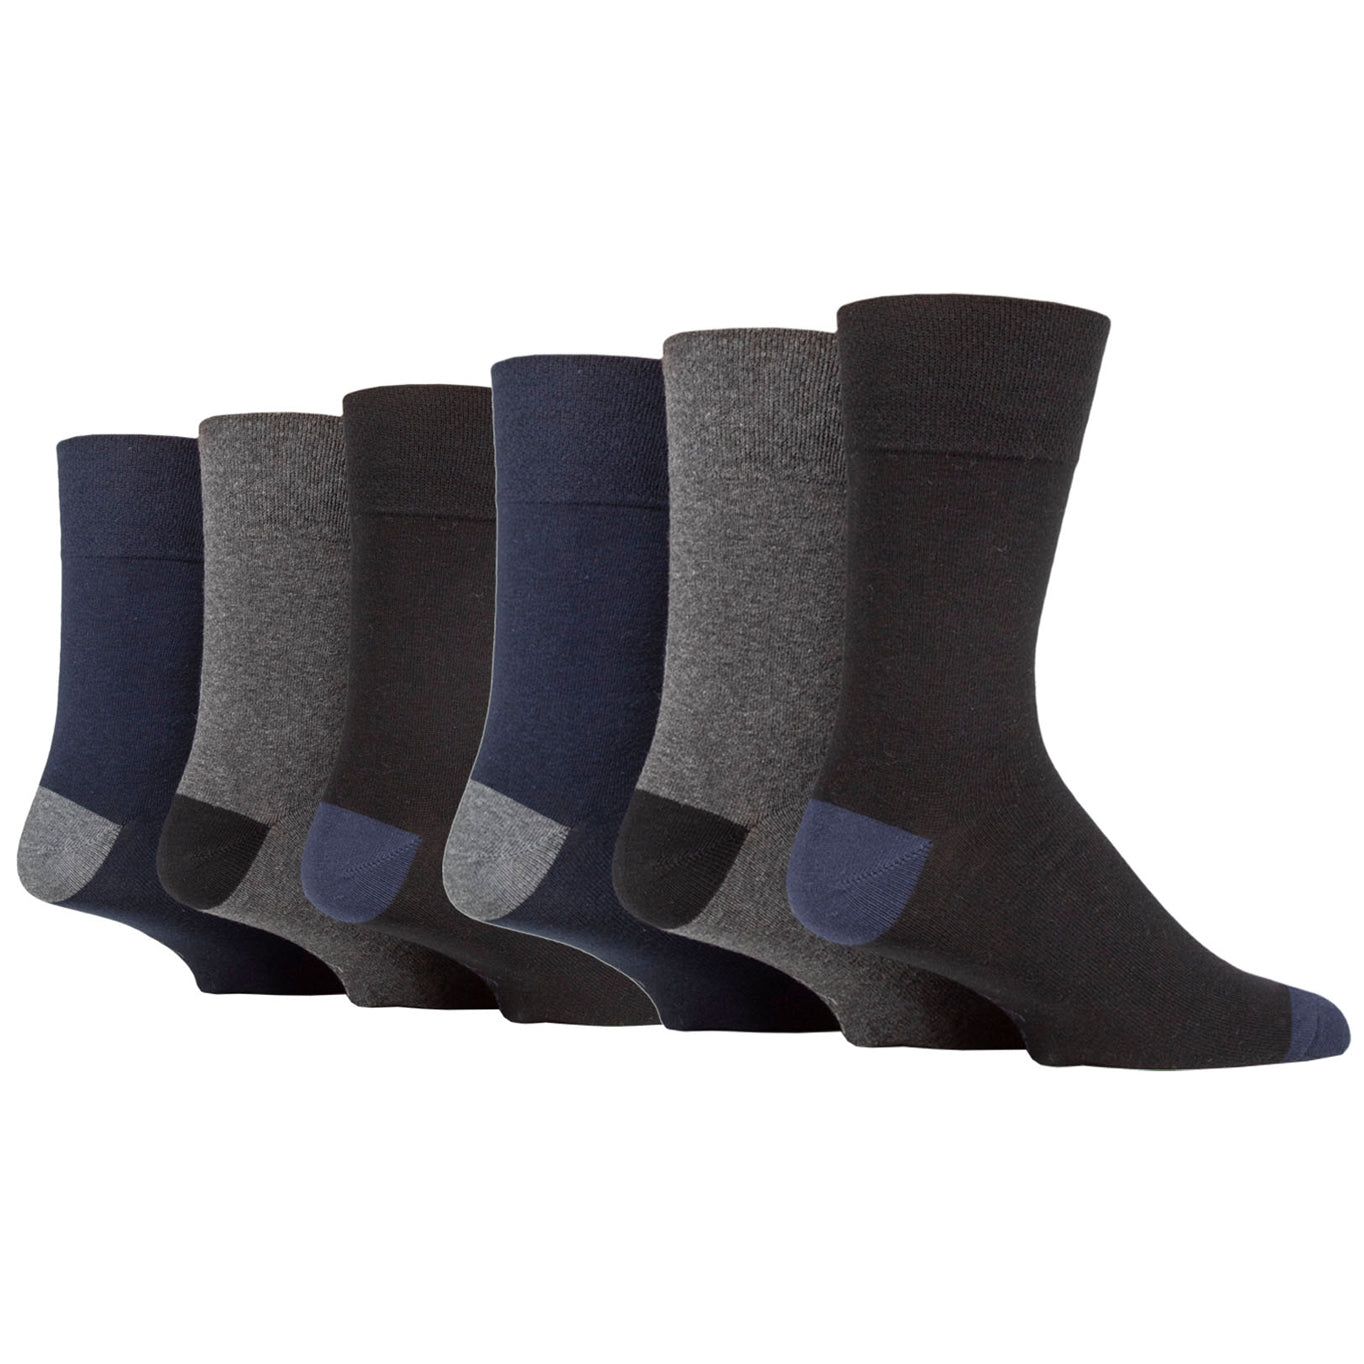 6 Pairs Men's Gentle Grip Cotton Socks Apex Contrast Heel & Toe Black/Navy/Charcoal